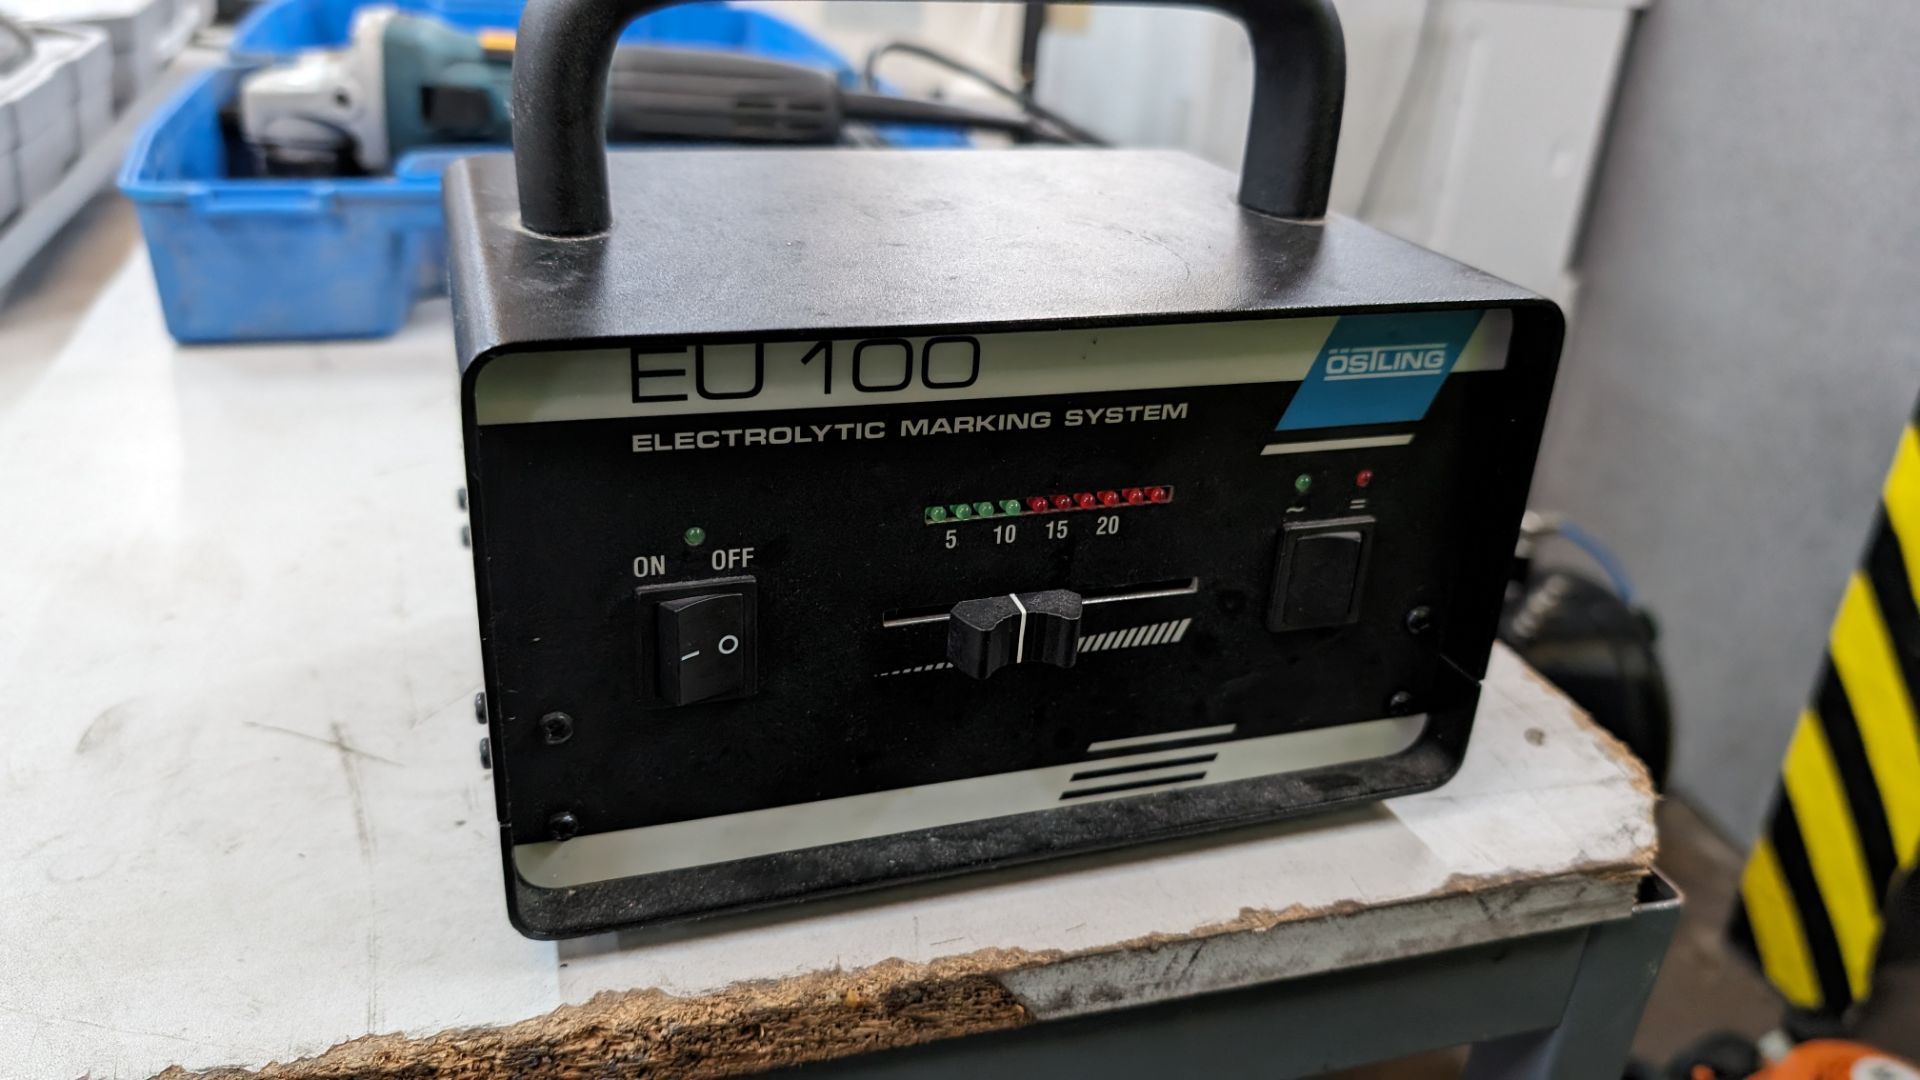 Ostling electrolytic marking system model EU100